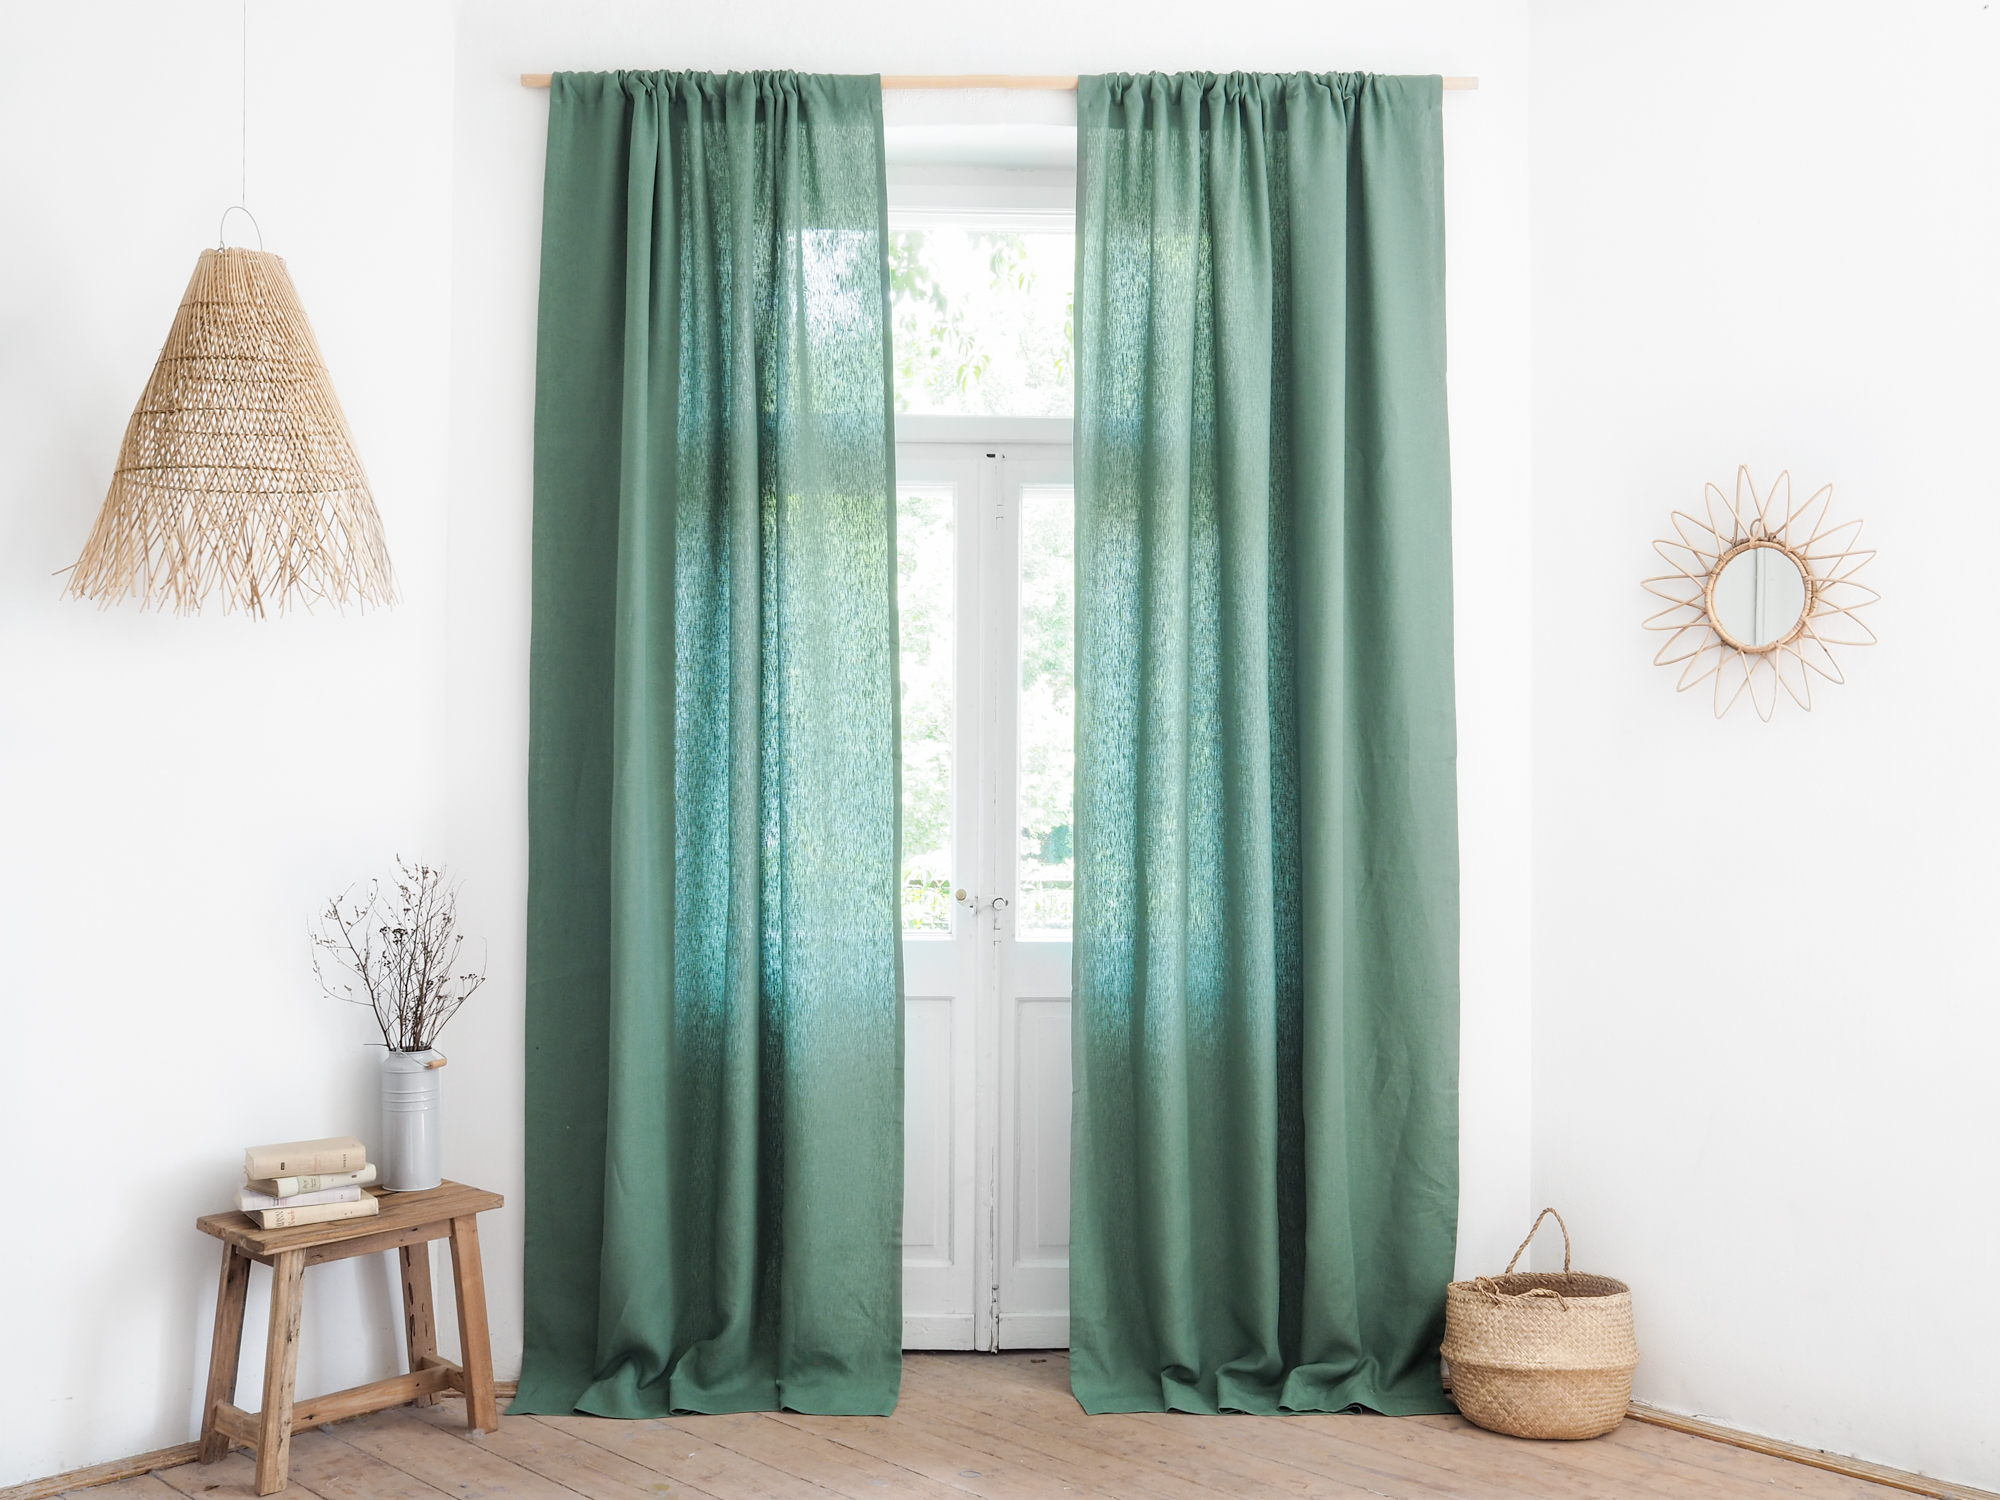 Green linen curtains